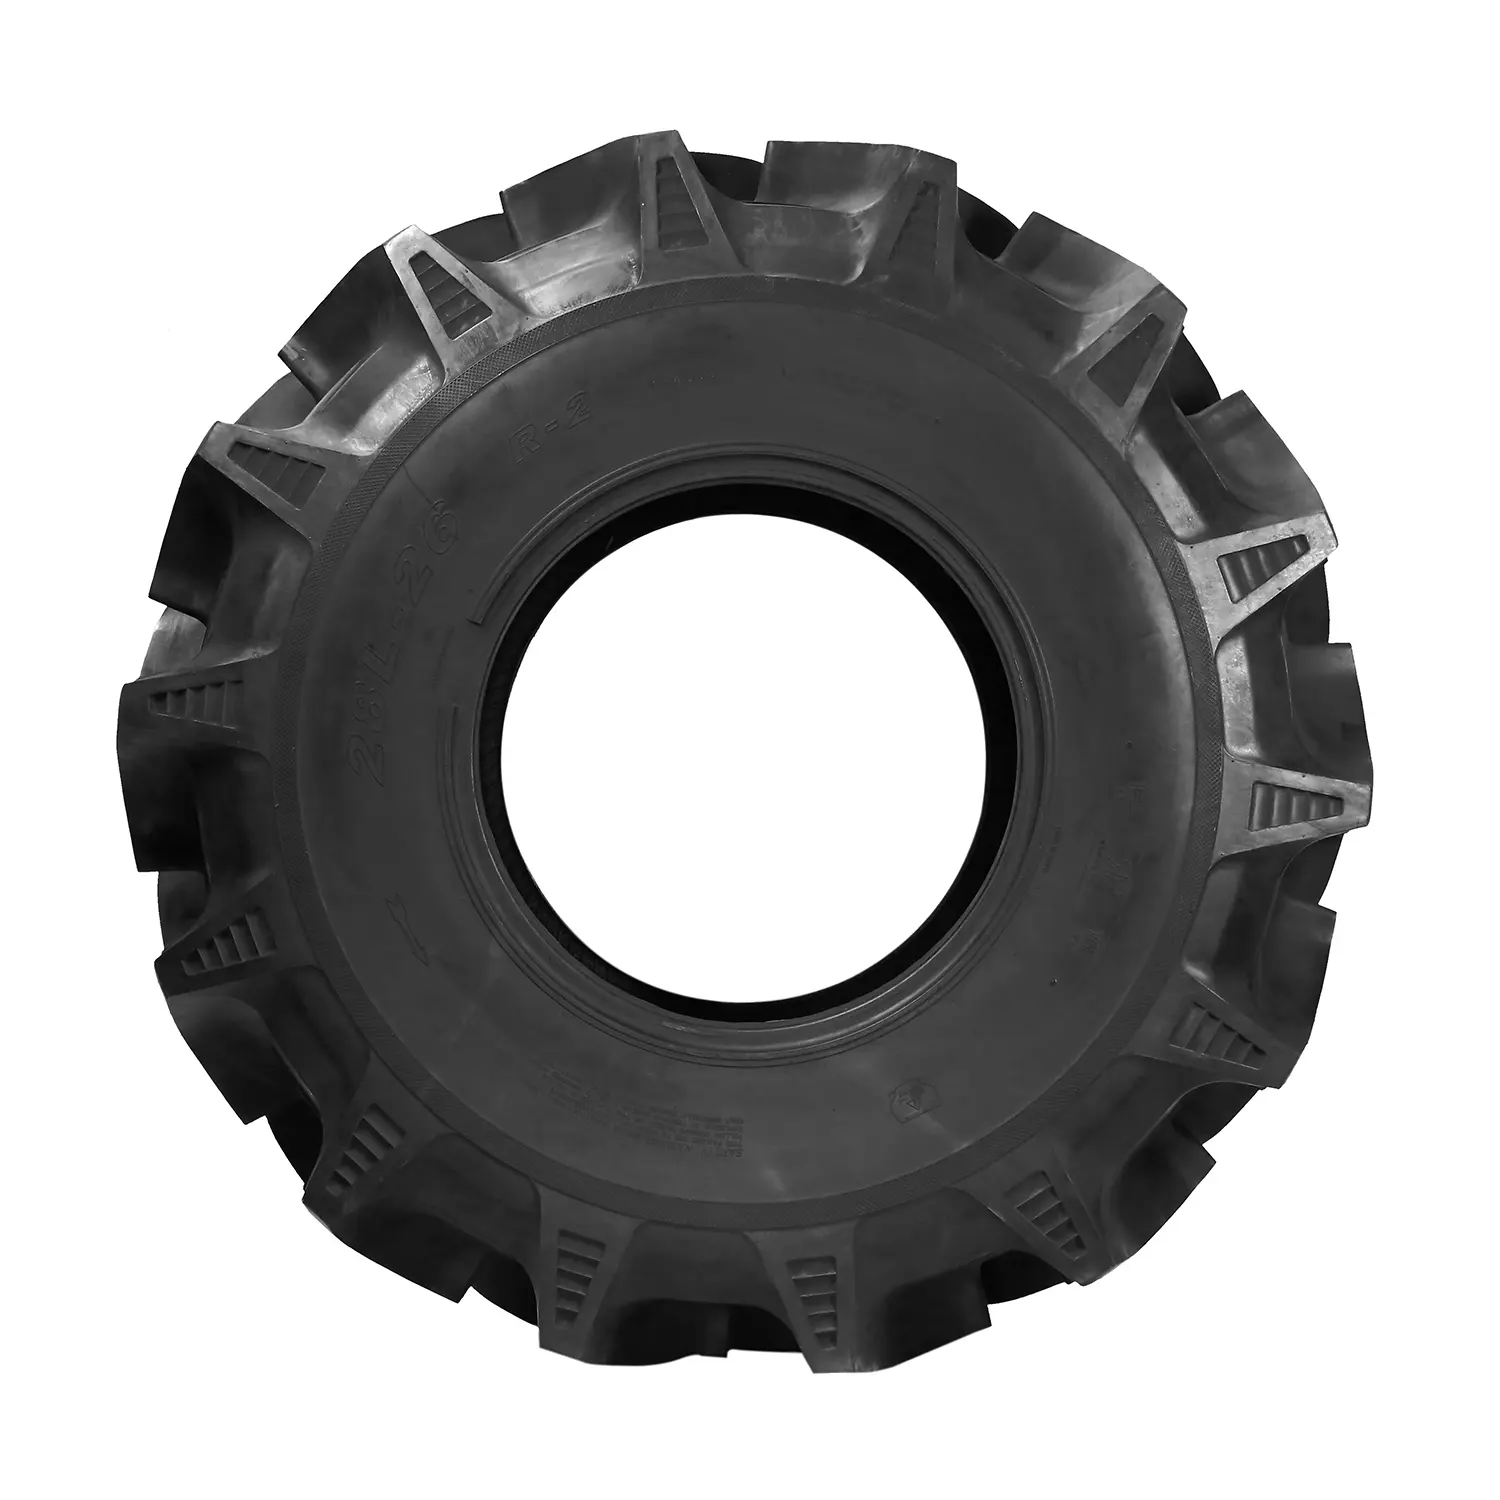 Tamaño 9,5-20-10Pr. Los neumáticos de se pueden usar tanto en tractores como en cosechadoras